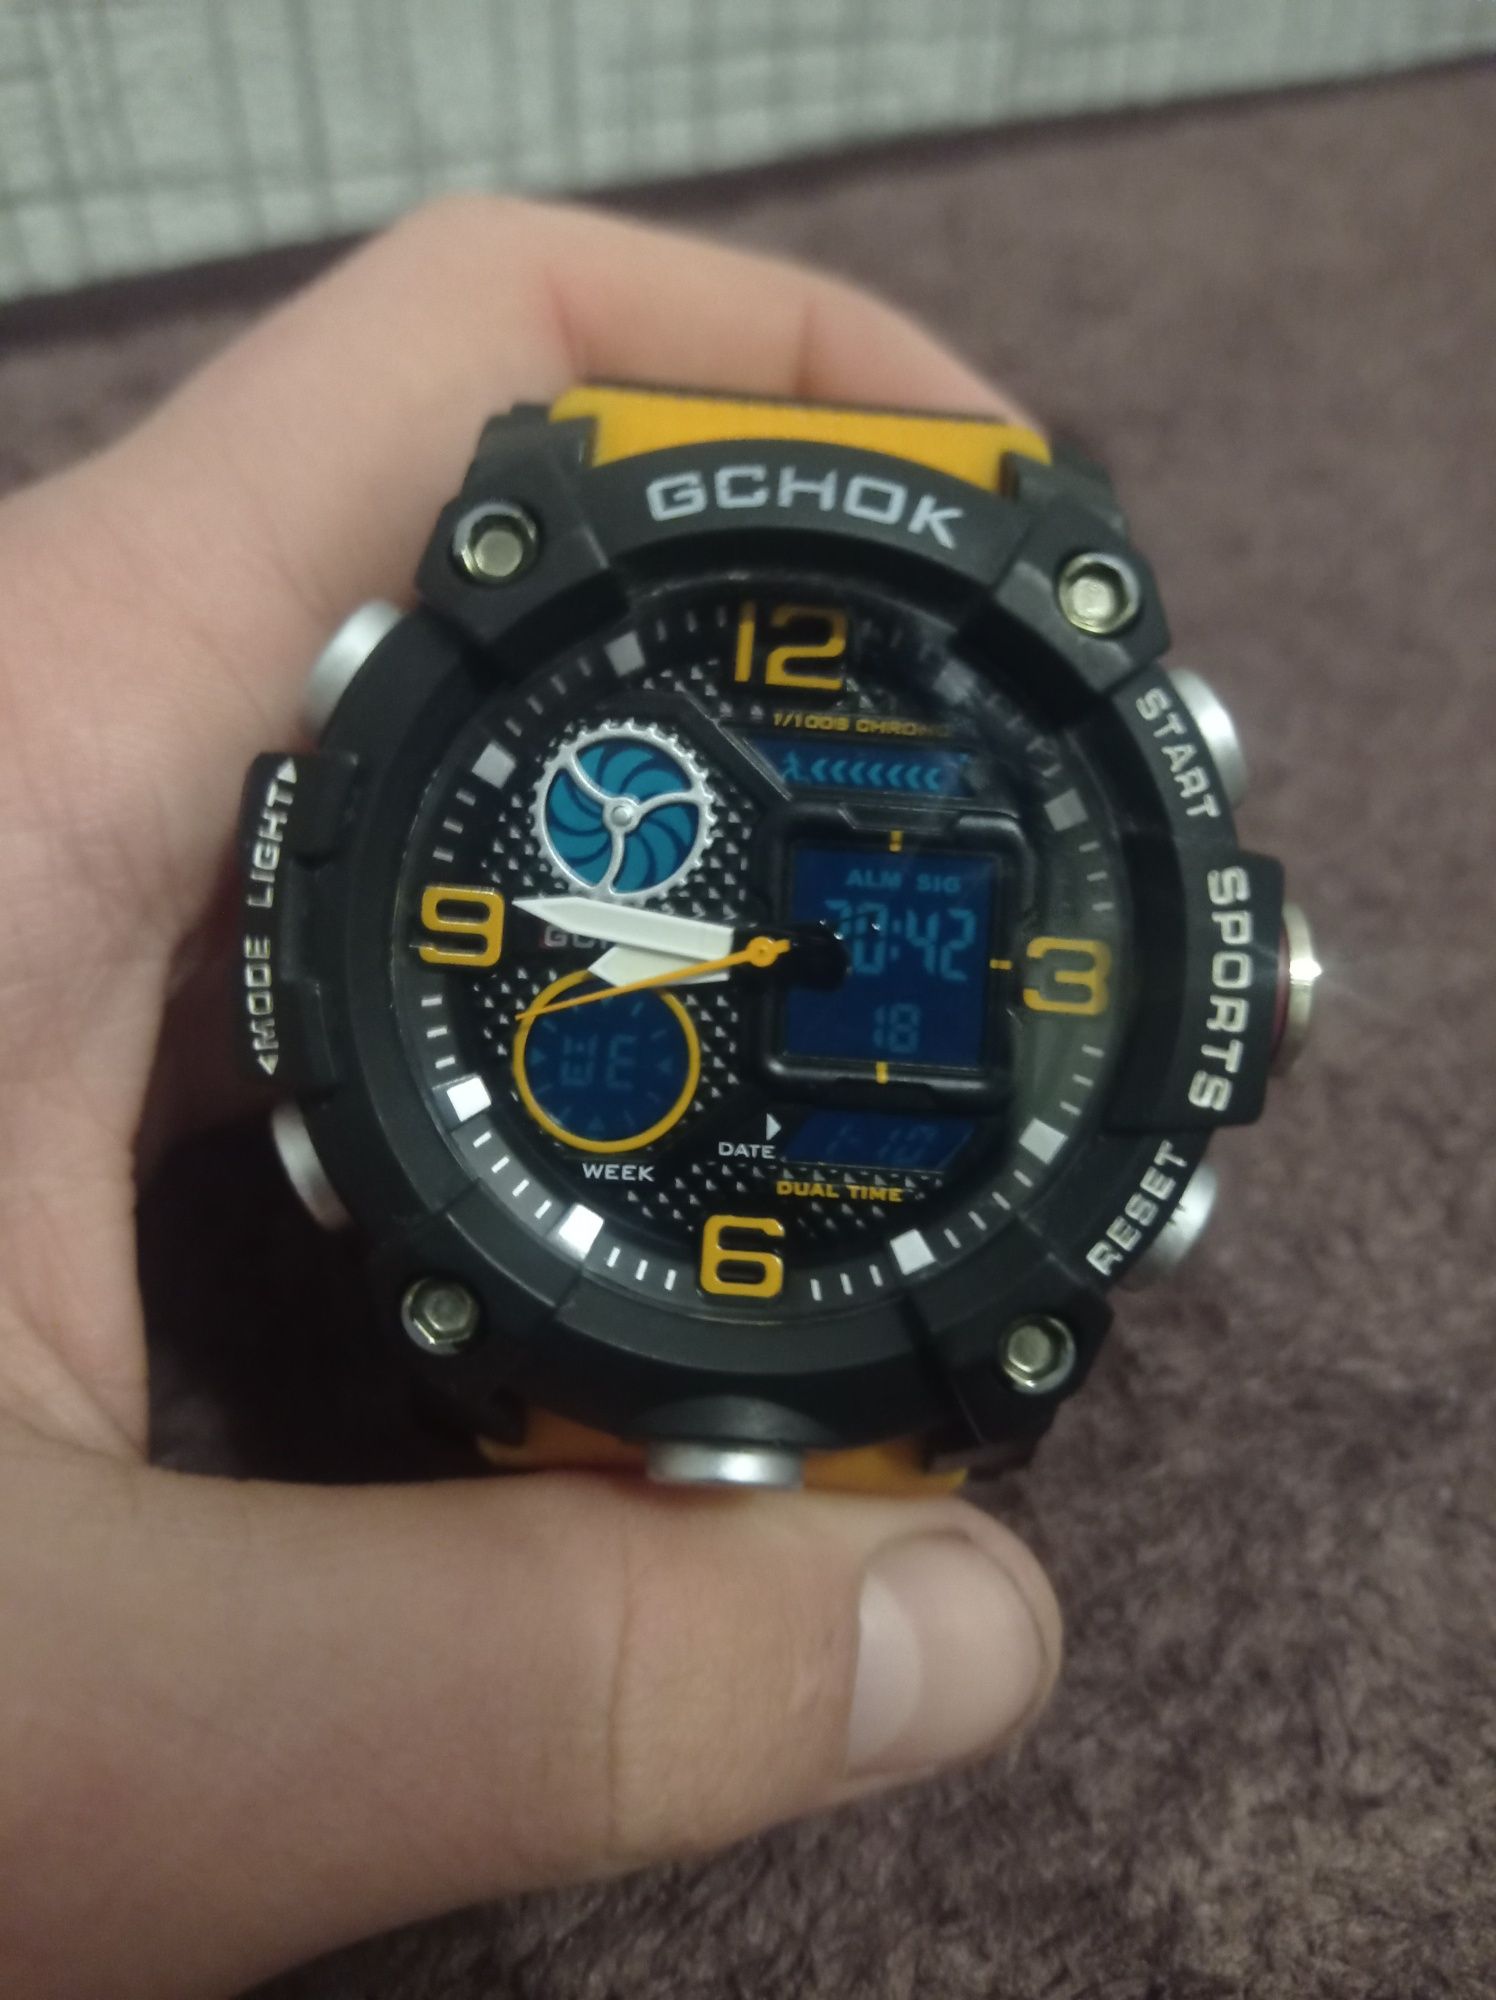 Часы GCHOK G-859